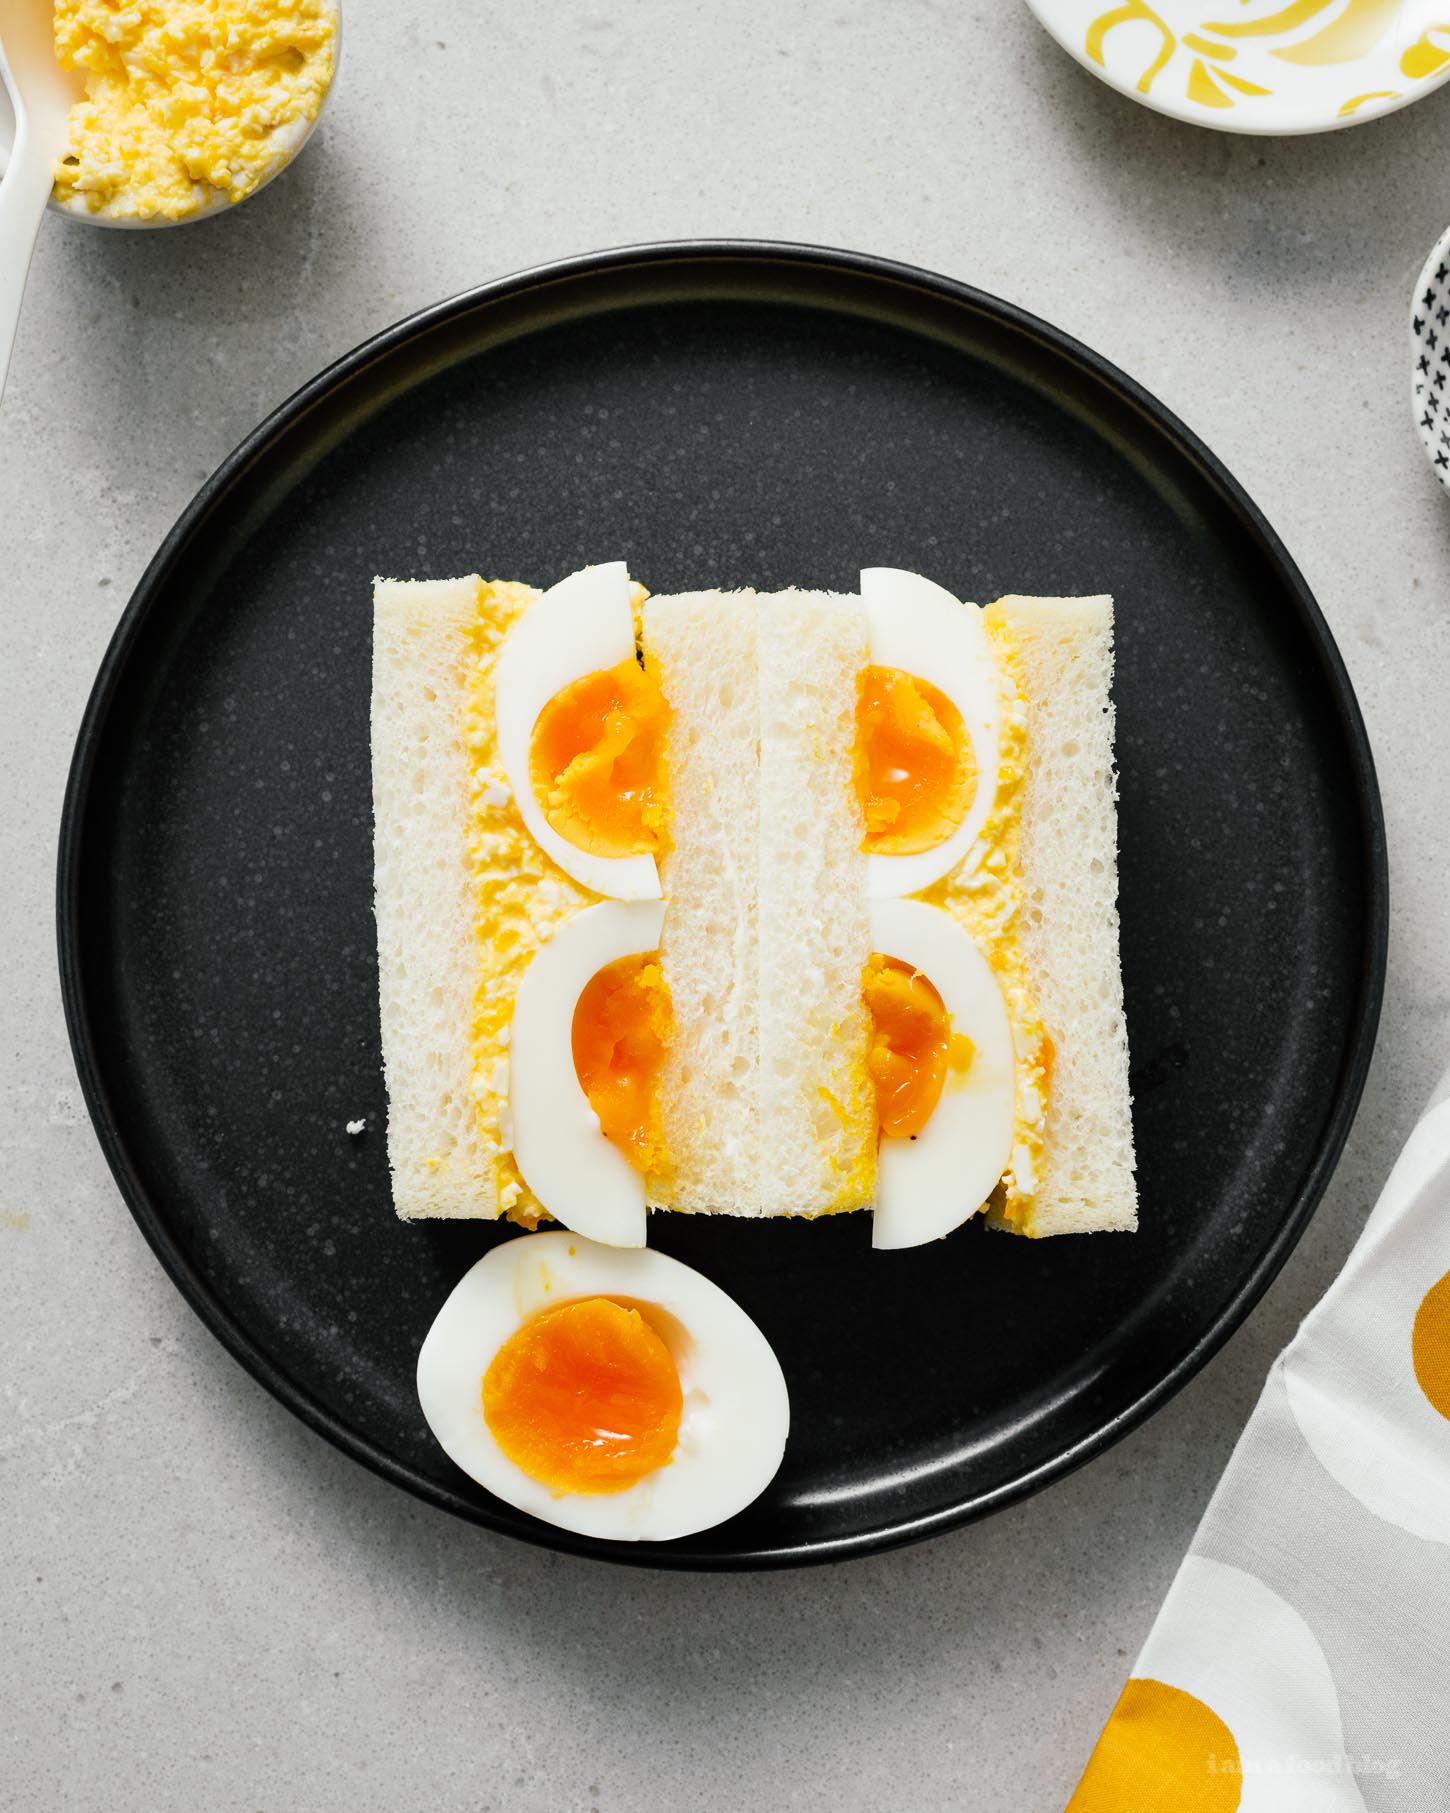 Ceapairí Sailéad Uibheacha Seapánacha! An breá leat ceapairí sailéad uibhe ach gur mhaith leat casadh? Maonáis kewpie creamy agus uibheacha candied buaiteoir an ceapaire. Cosúil leis na ceapairí a bhí agat ar laethanta saoire sa tSeapáin ach níos fearr;) #sandwiches #eggsalad #japanese #japanesefood #recipes #recipeoftheday #eggs